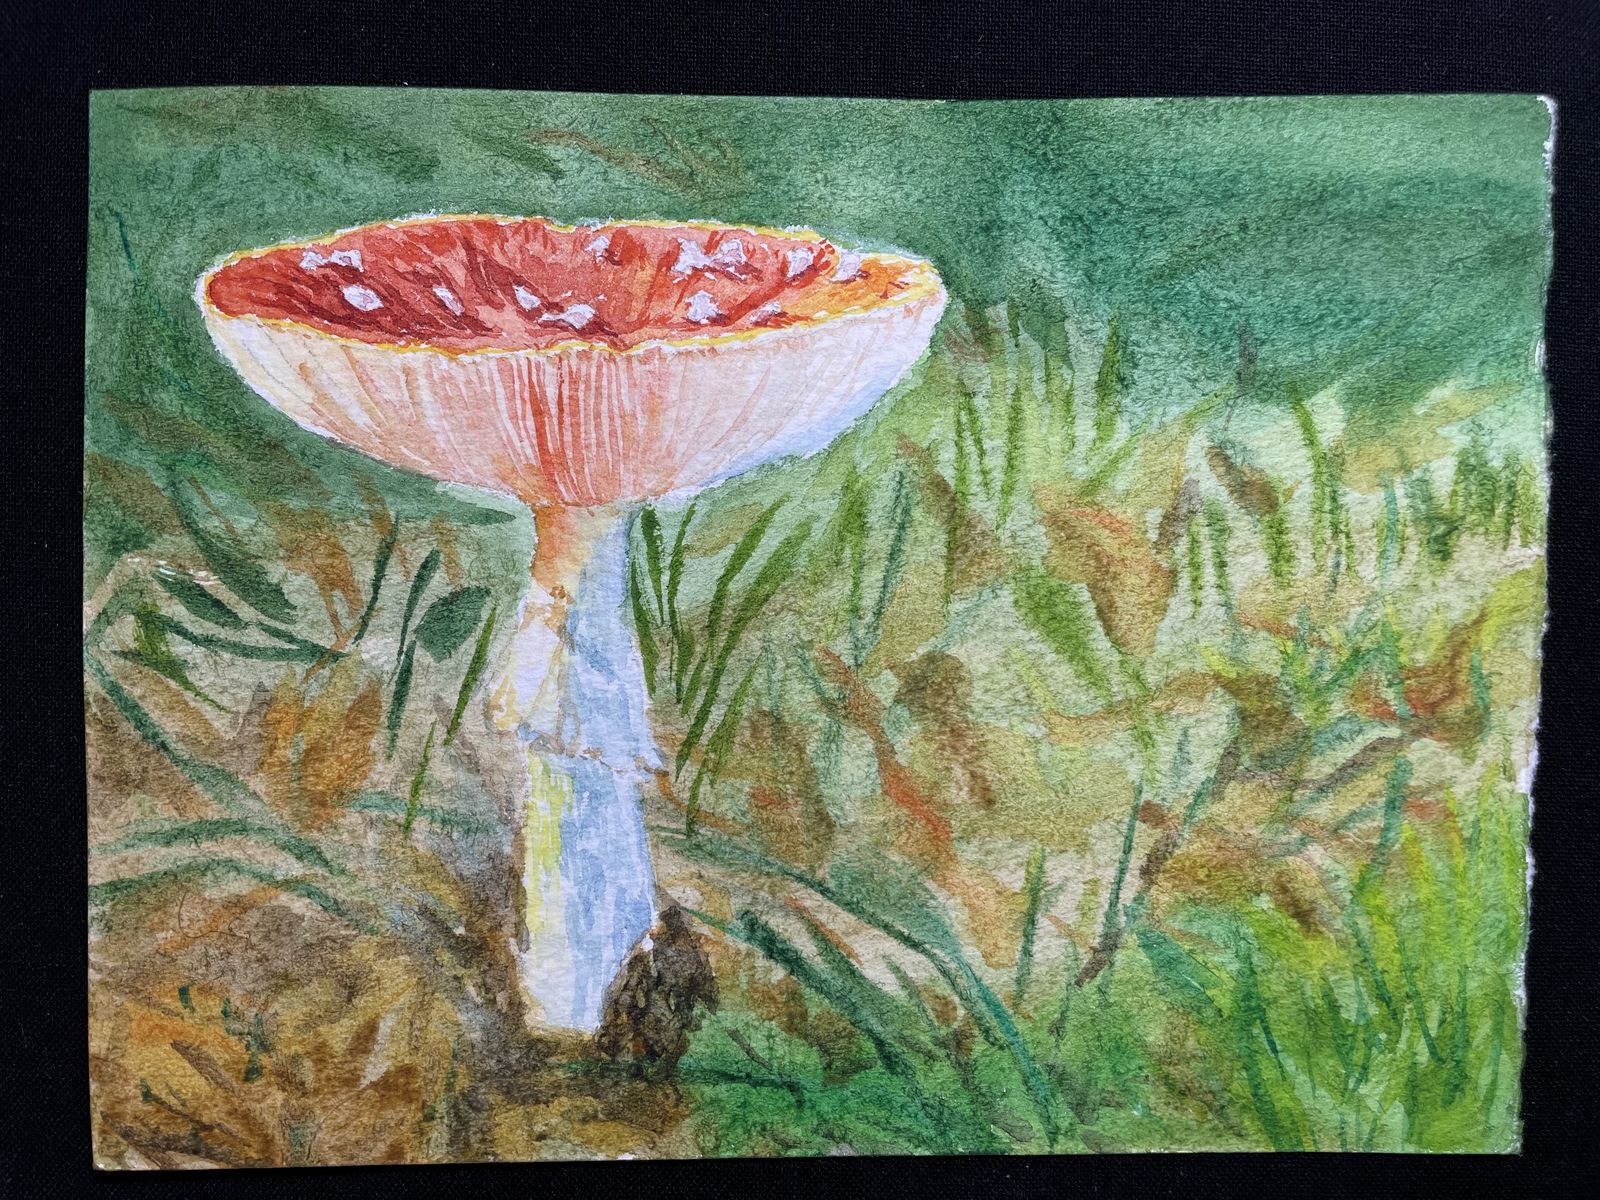 蘑菇插画图片壁纸